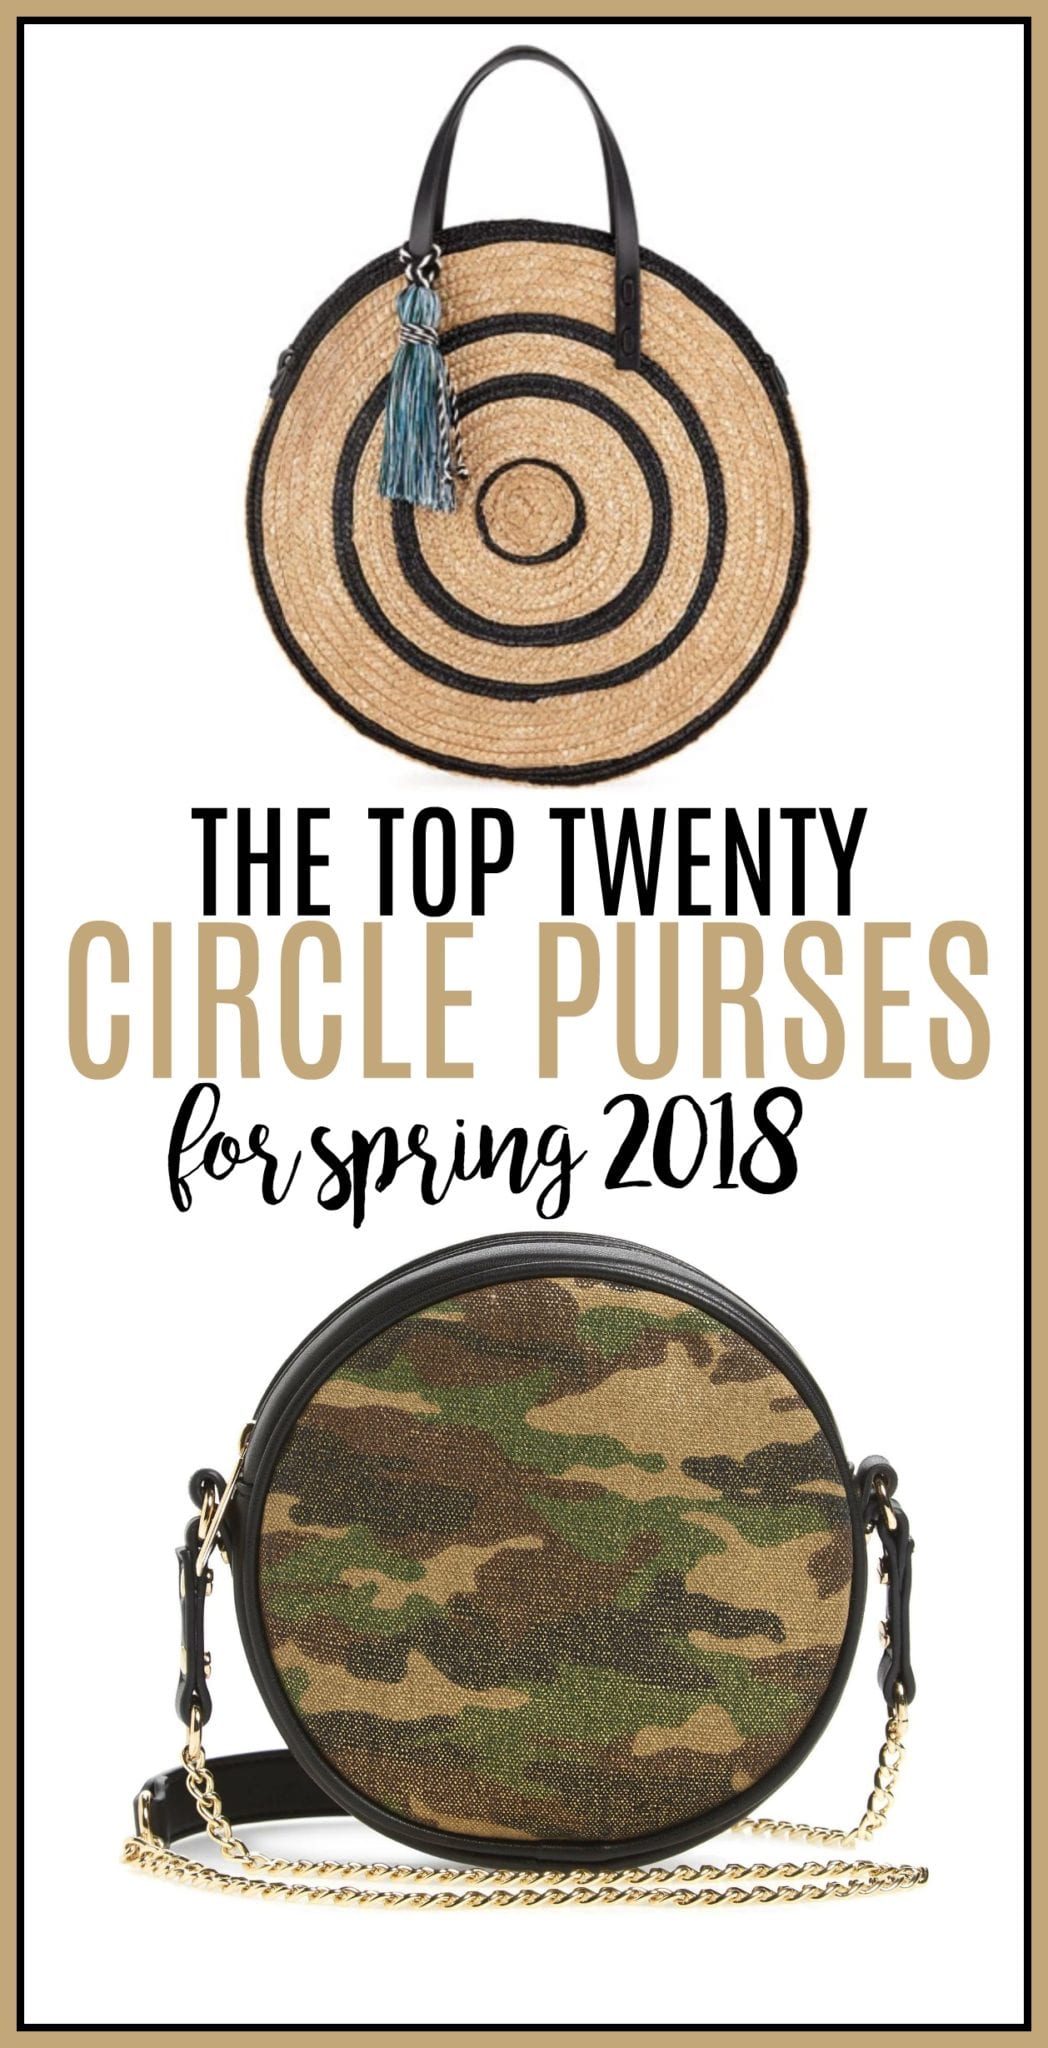 circle bags, circle purses, spring purses